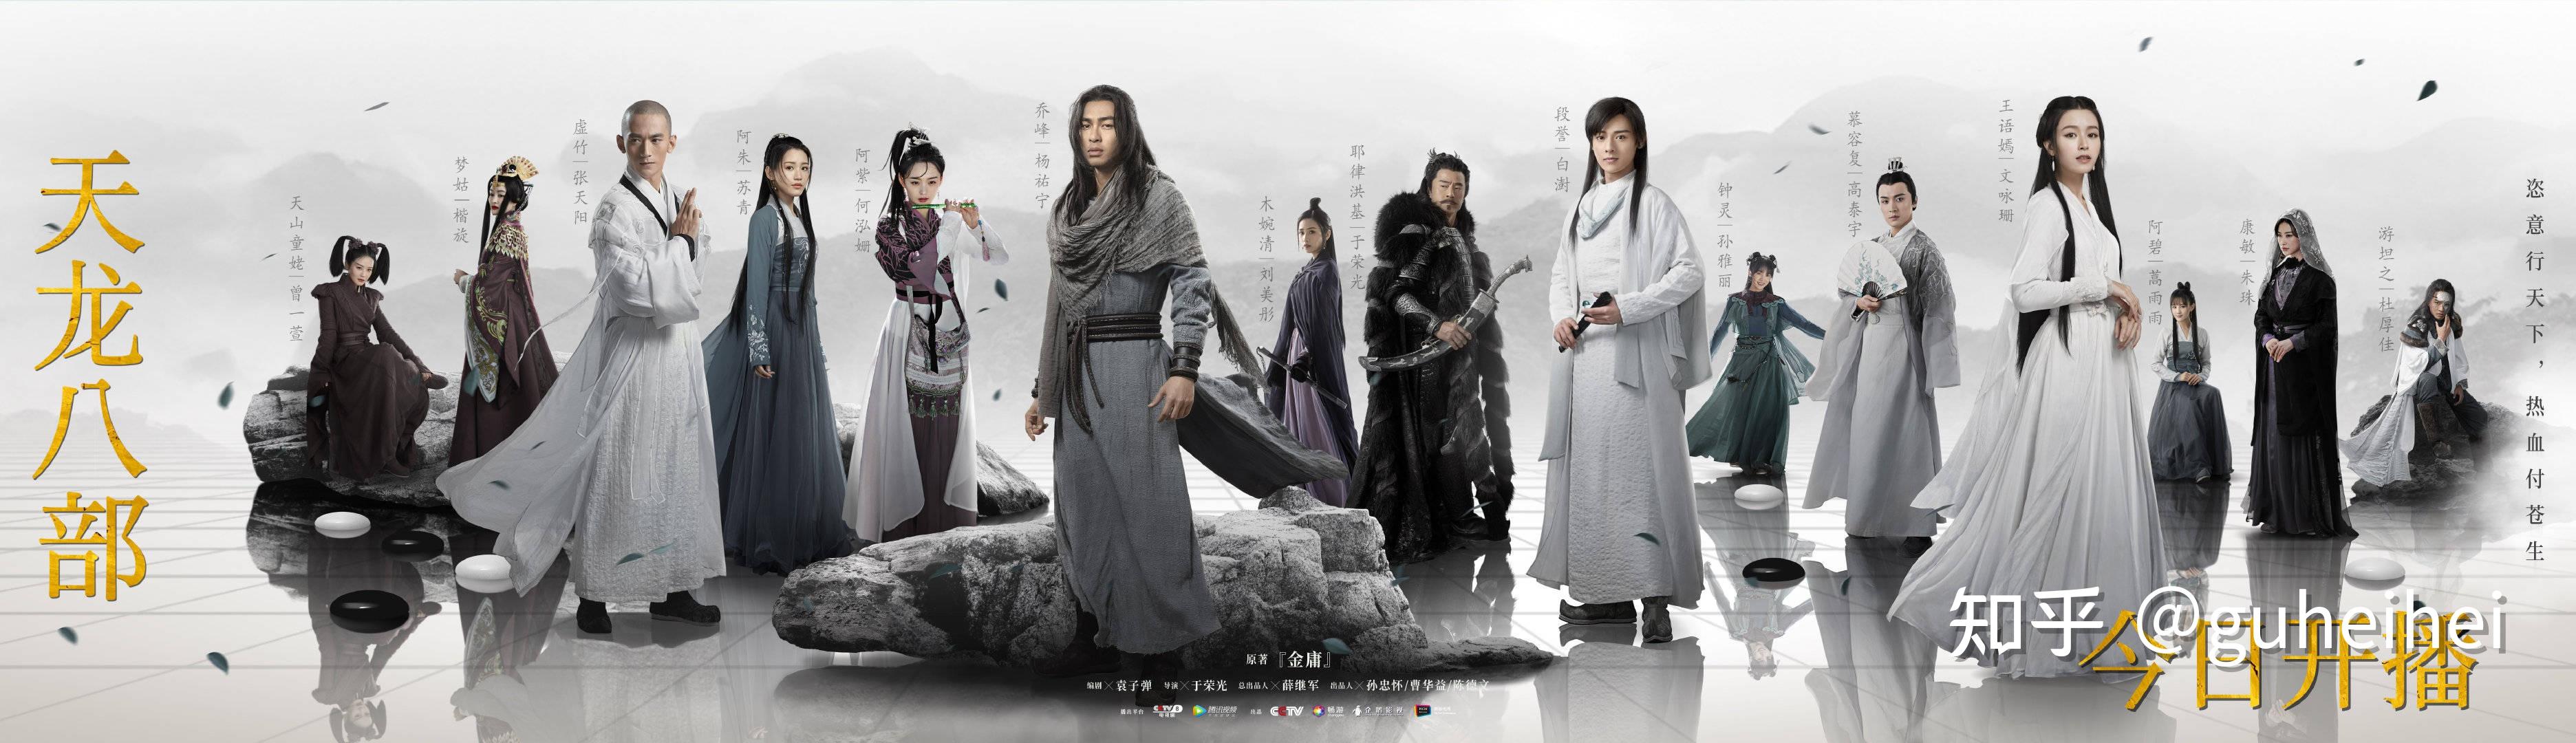 如何评价杨佑宁,文咏珊主演的新《天龙八部》(2021 年)?